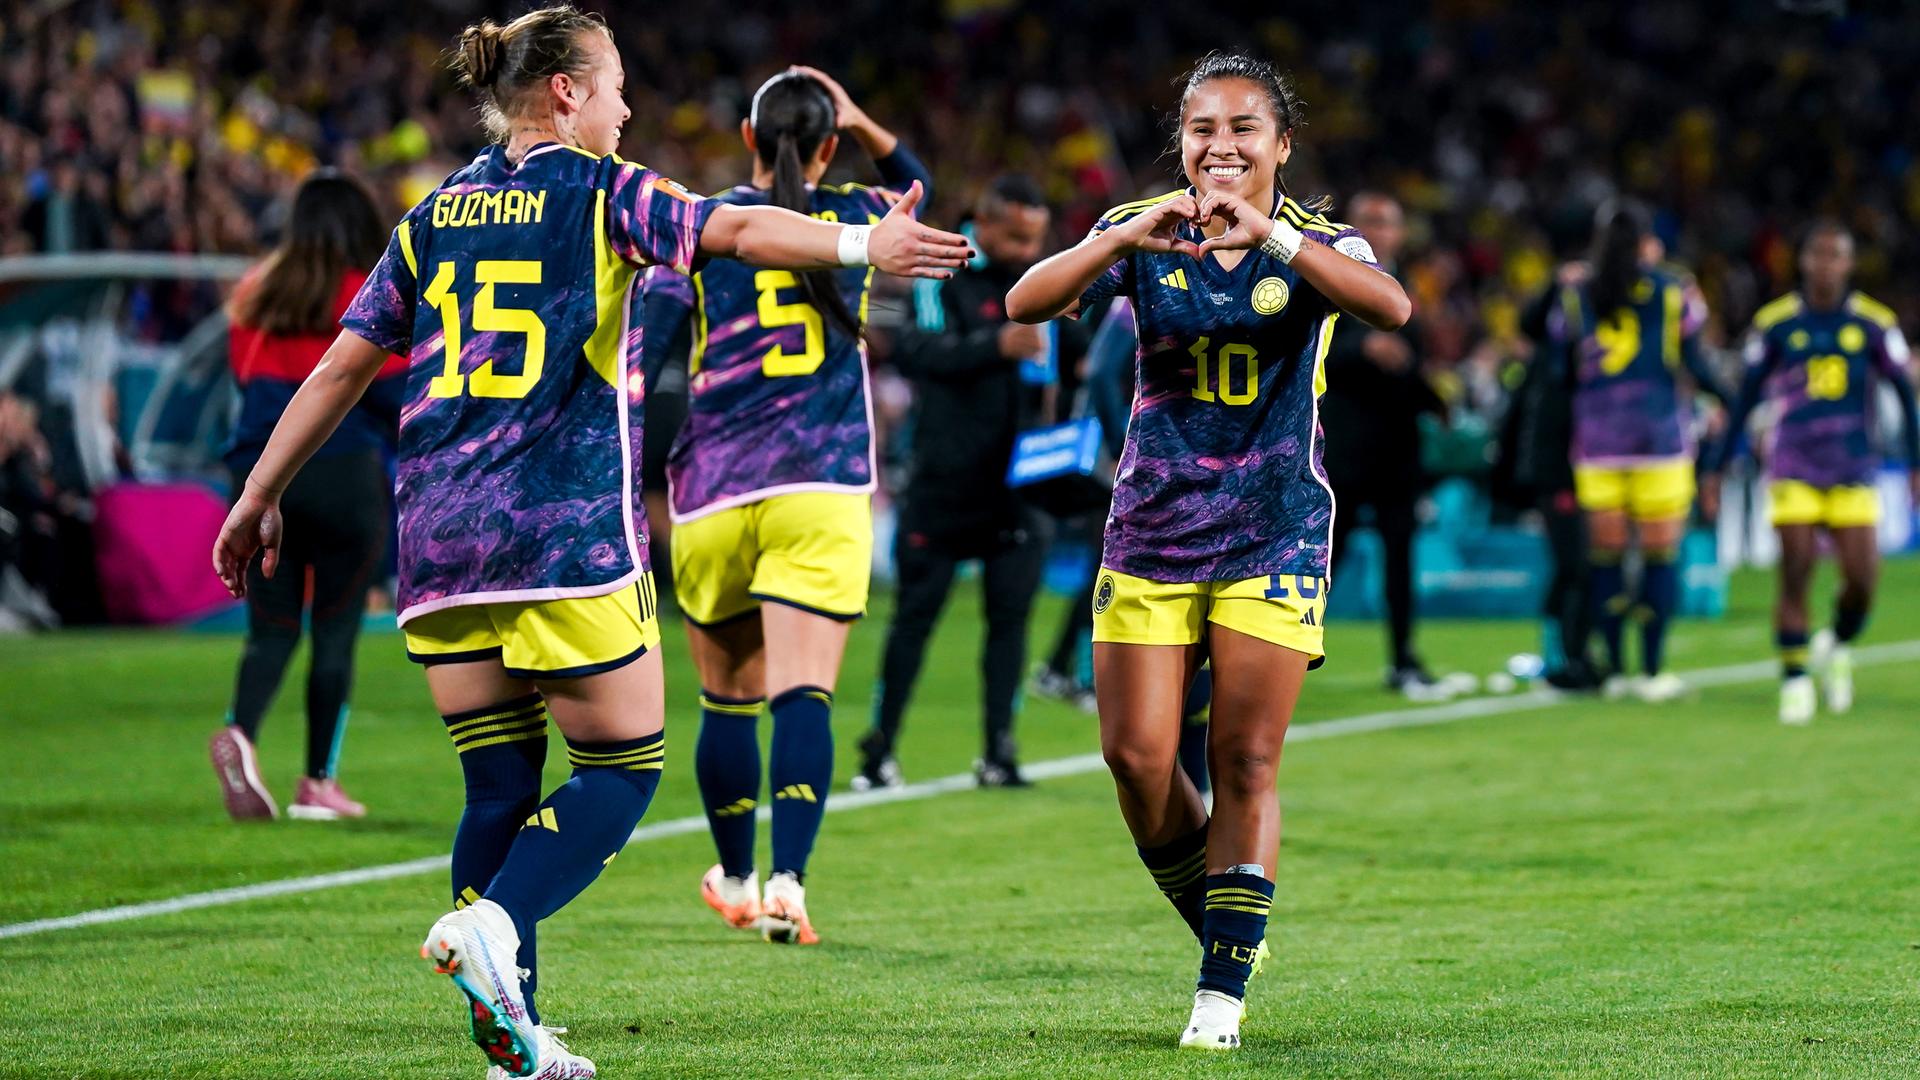 Der Erfolg der kolumbianischen Frauen bei der WM (hier bei einem Torjubel) hat nach Einschätzung der Journalistin Karen Ariza Carranza auch die Wahrnehmung von Frauen im Sport im eigenen Land verändert. 